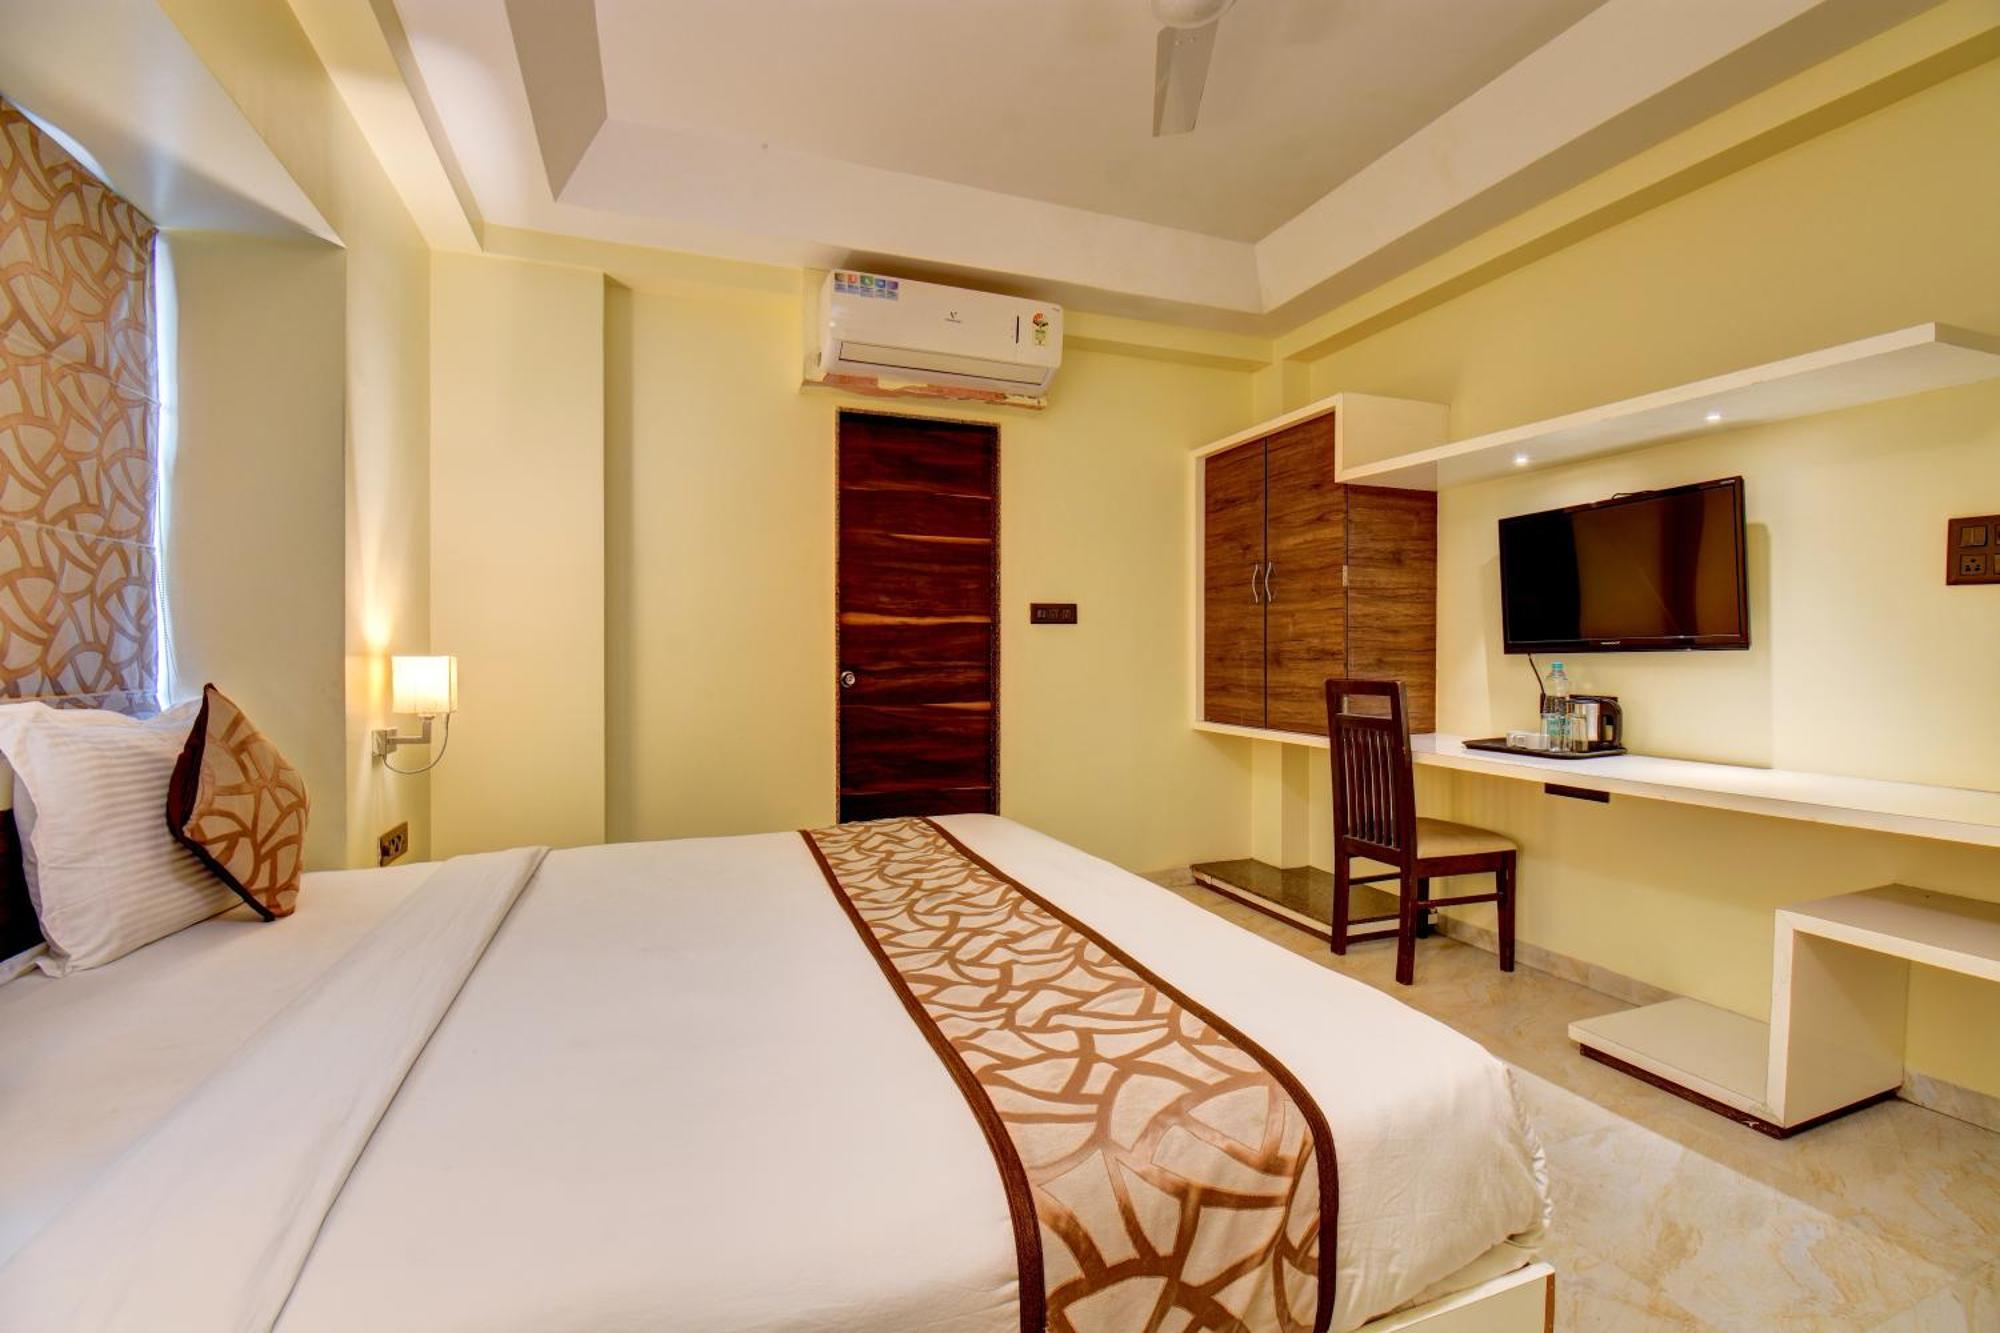 أورانغاباد Hotel Deepali Executive المظهر الخارجي الصورة